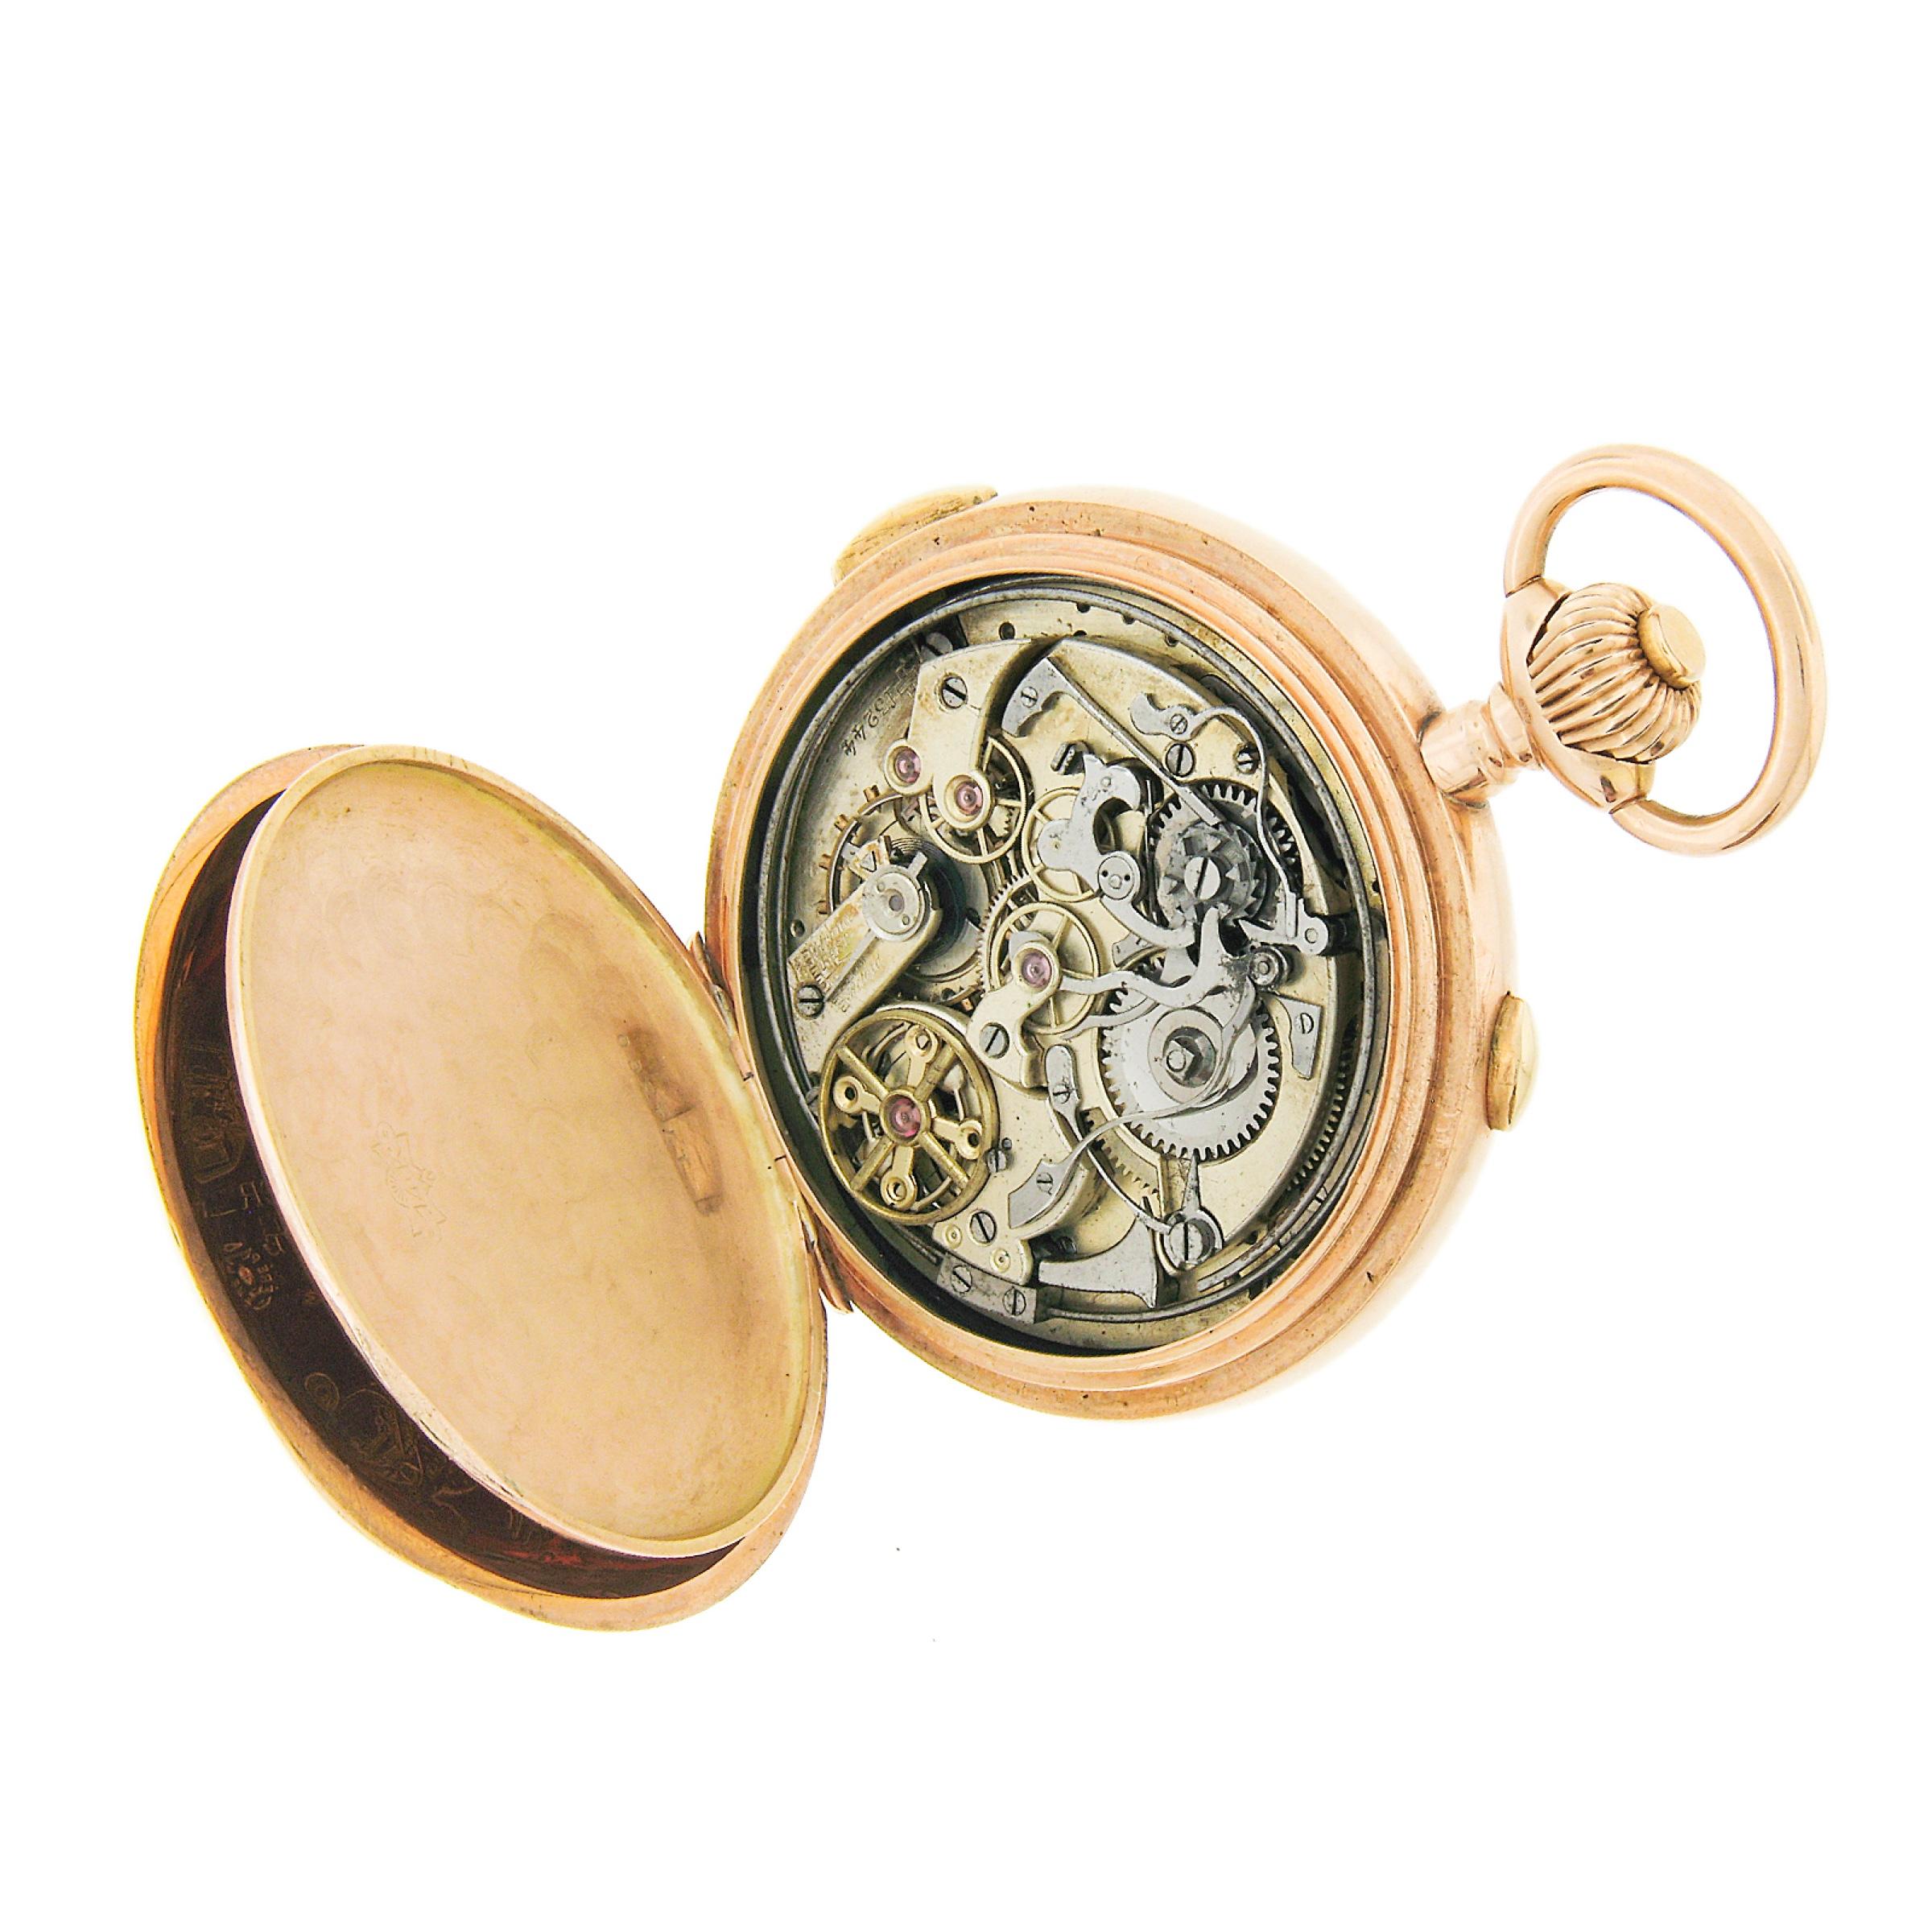 Cette montre de poche ancienne Audemars Frères est dotée d'un levier doré et d'un mouvement à répétition 1/4 d'heure activé par un bouton poussoir. Cadran en émail blanc avec trois cadrans subsidiaires en creux pour la date, la phase de lune et la